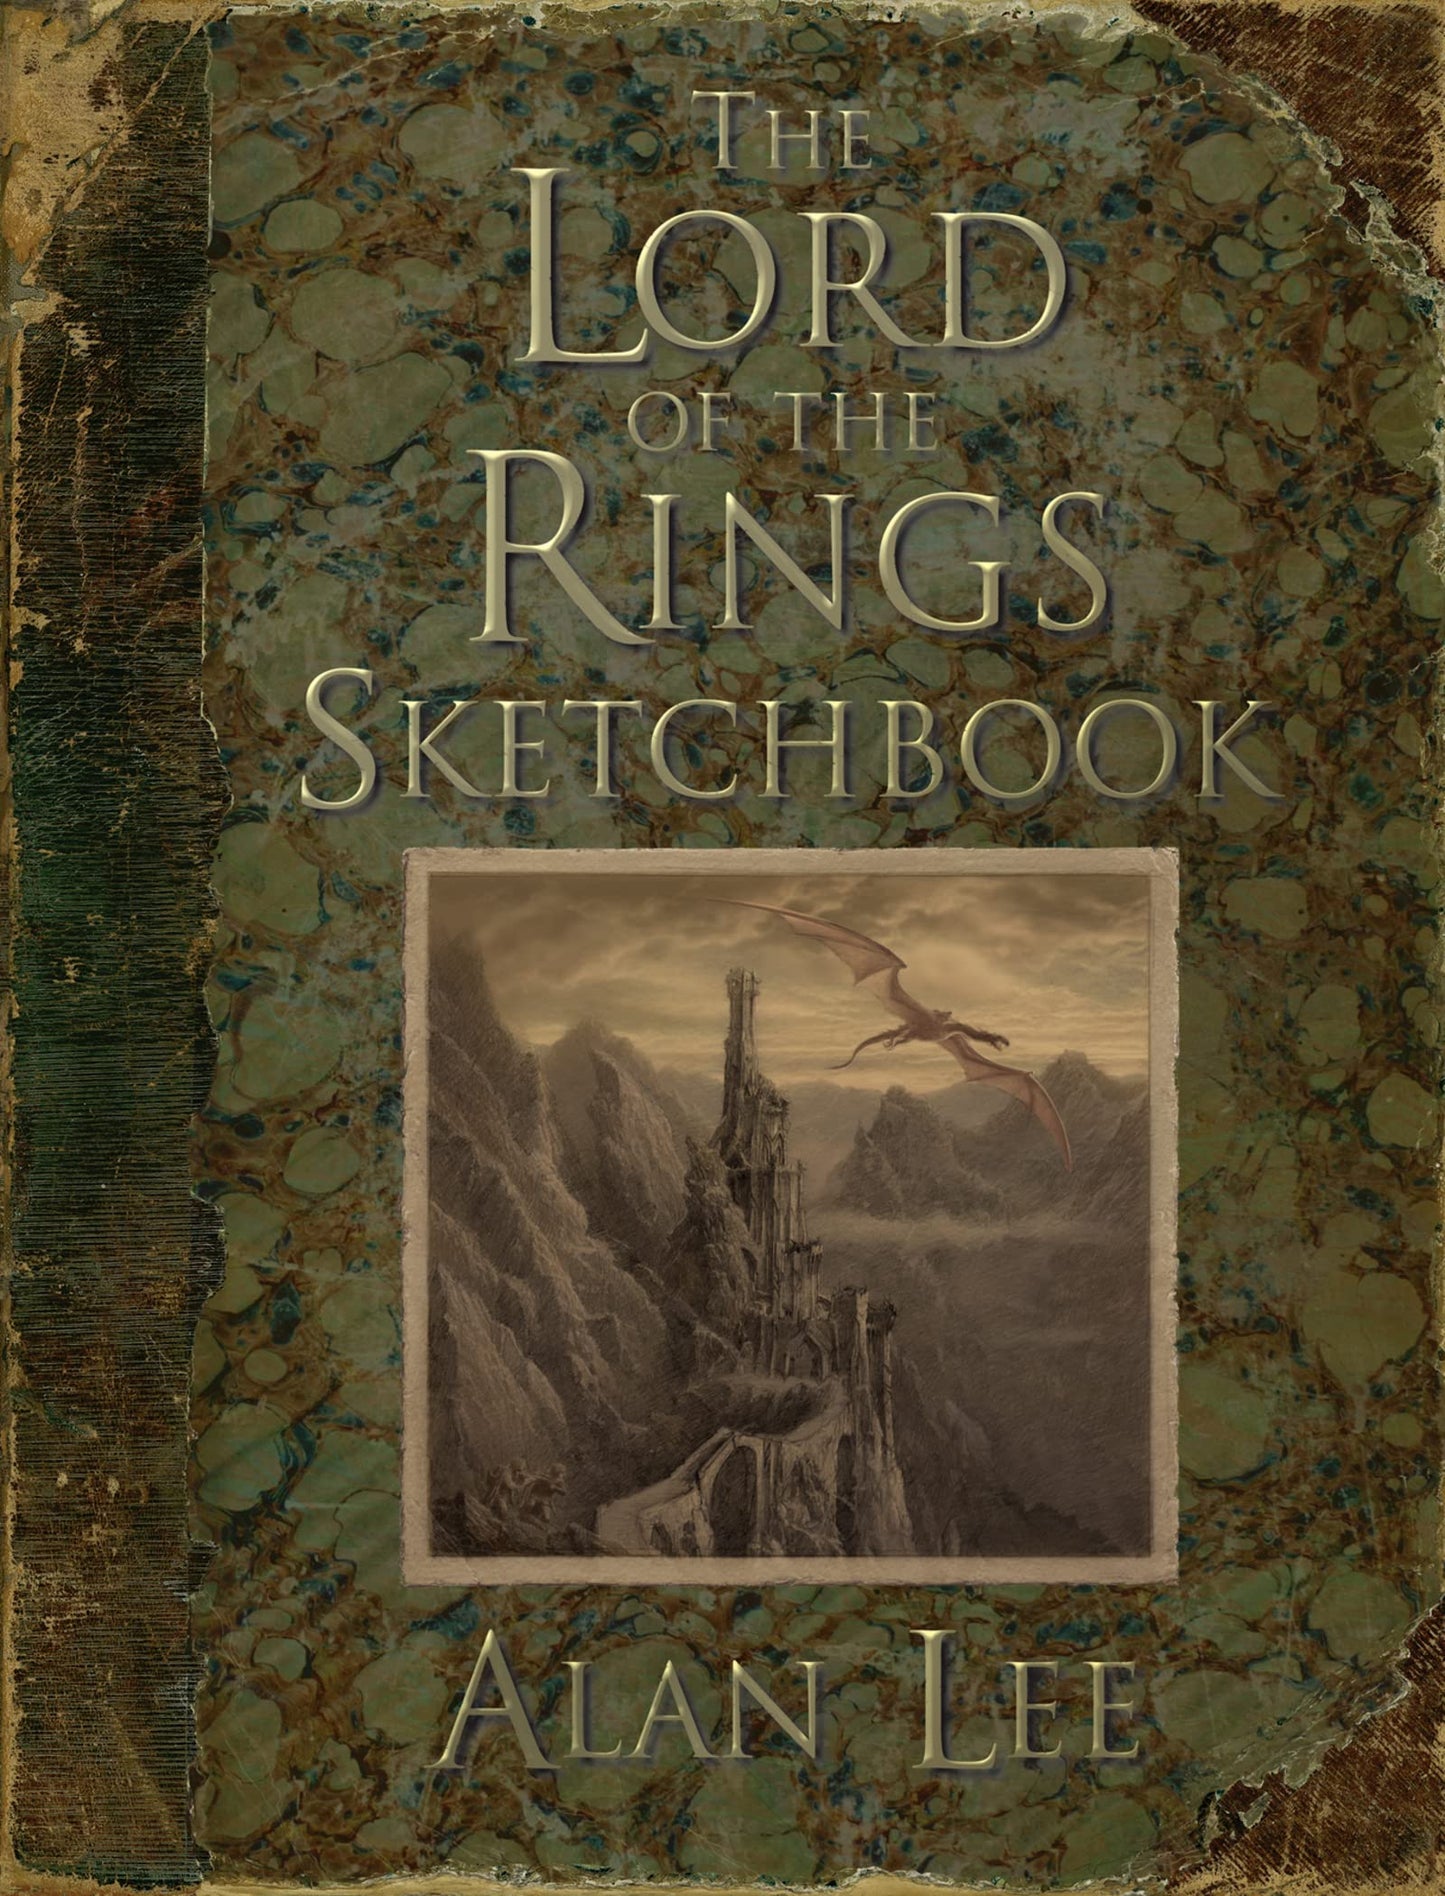 Lord of the Rings Sketchbook (Lee - hardcover)